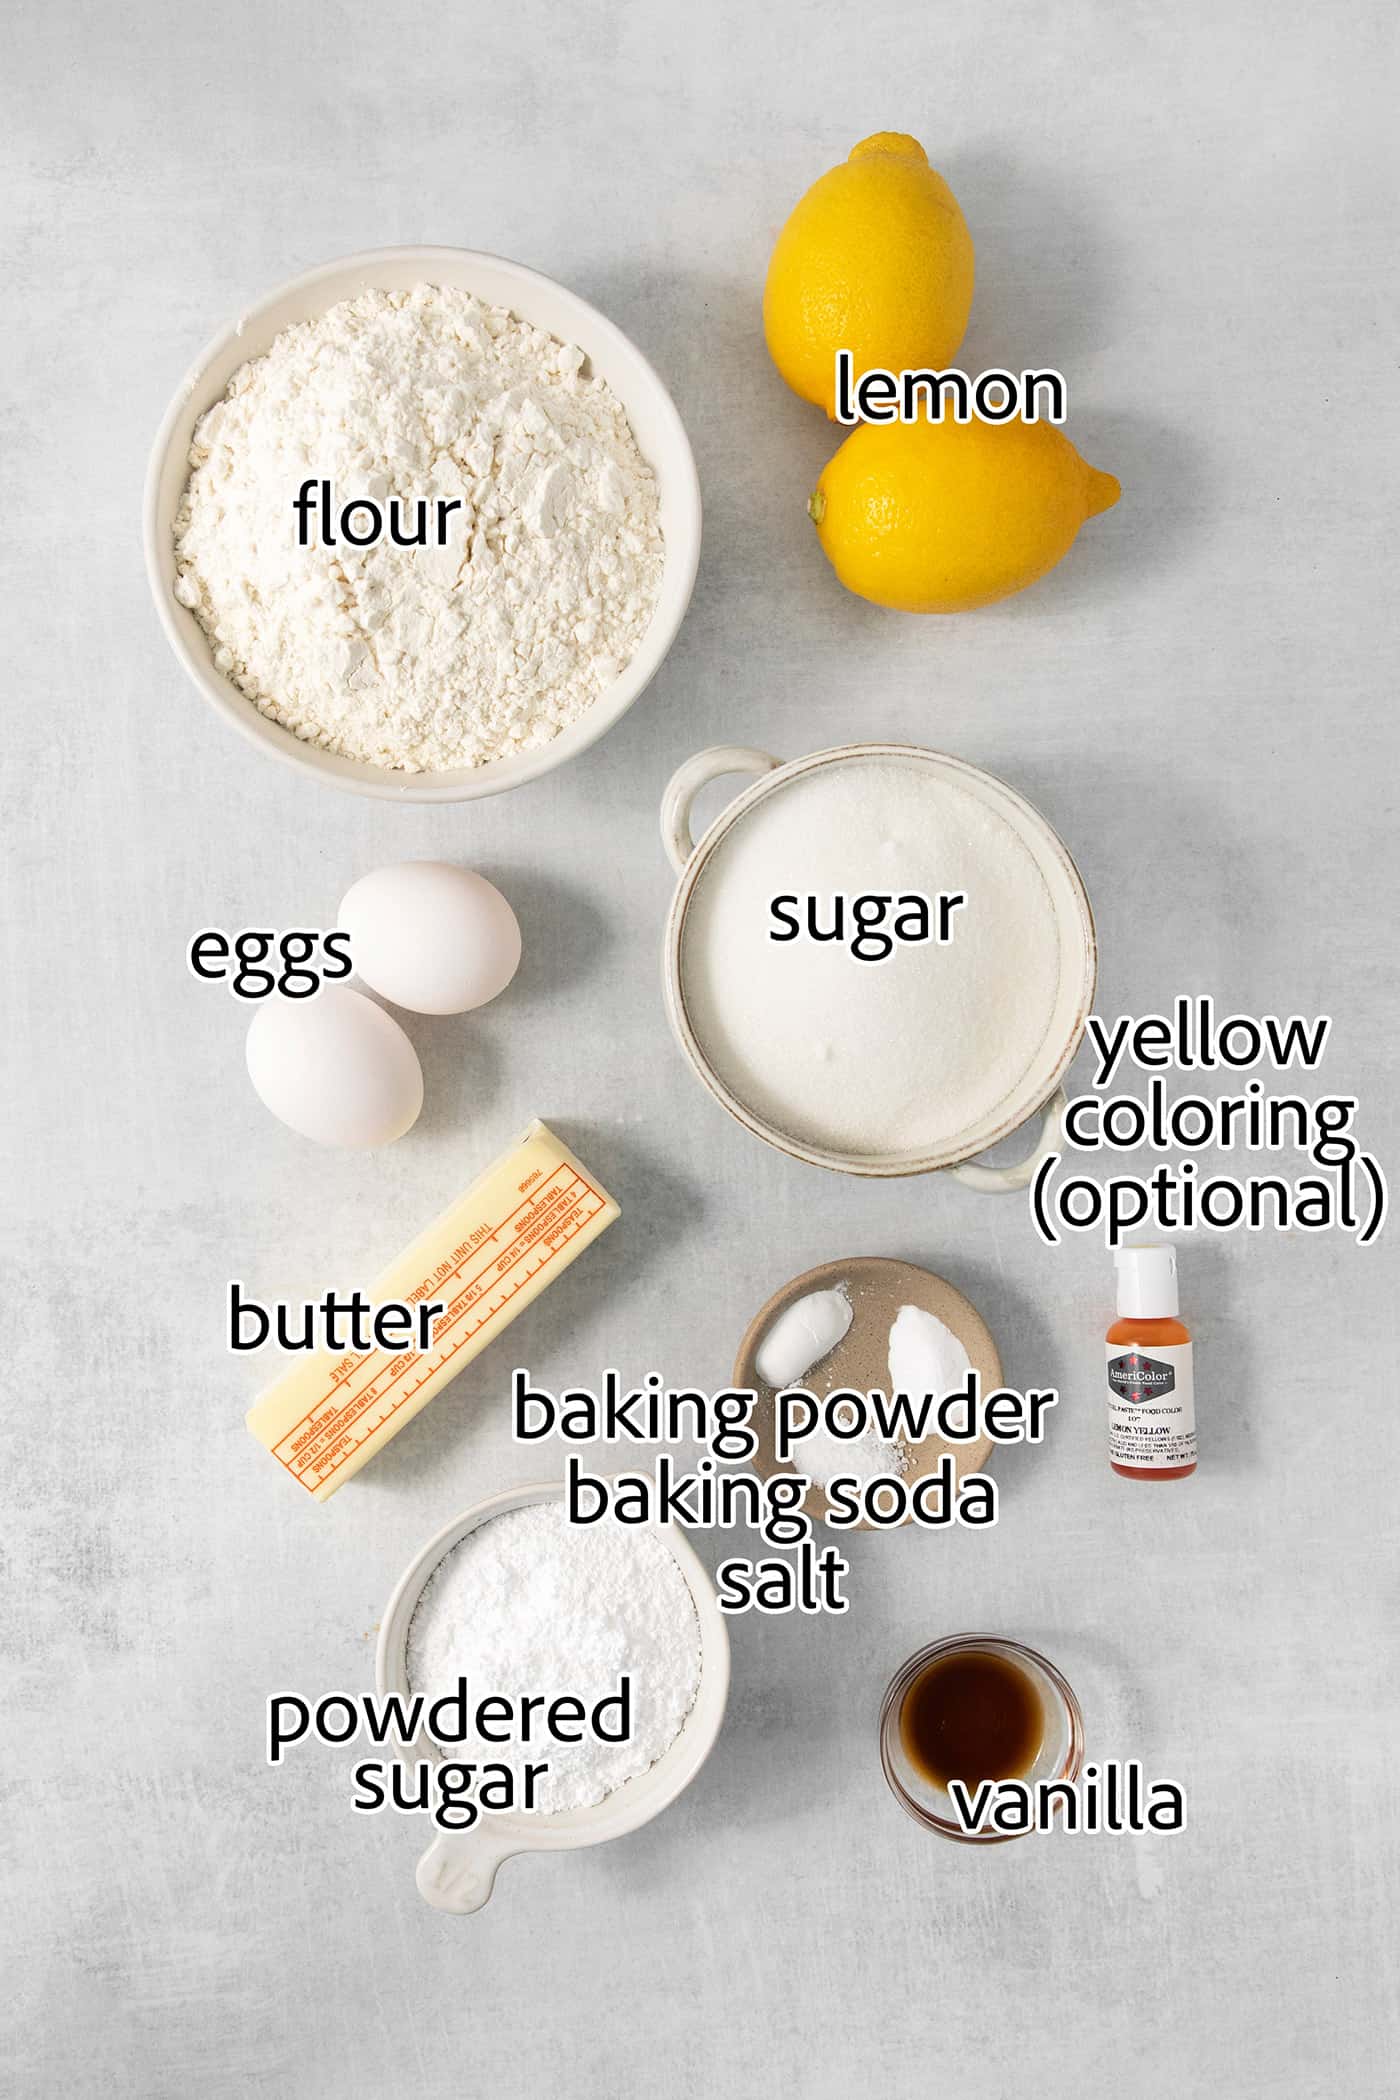 ingredients needed to make homemade lemon crinkle cookies